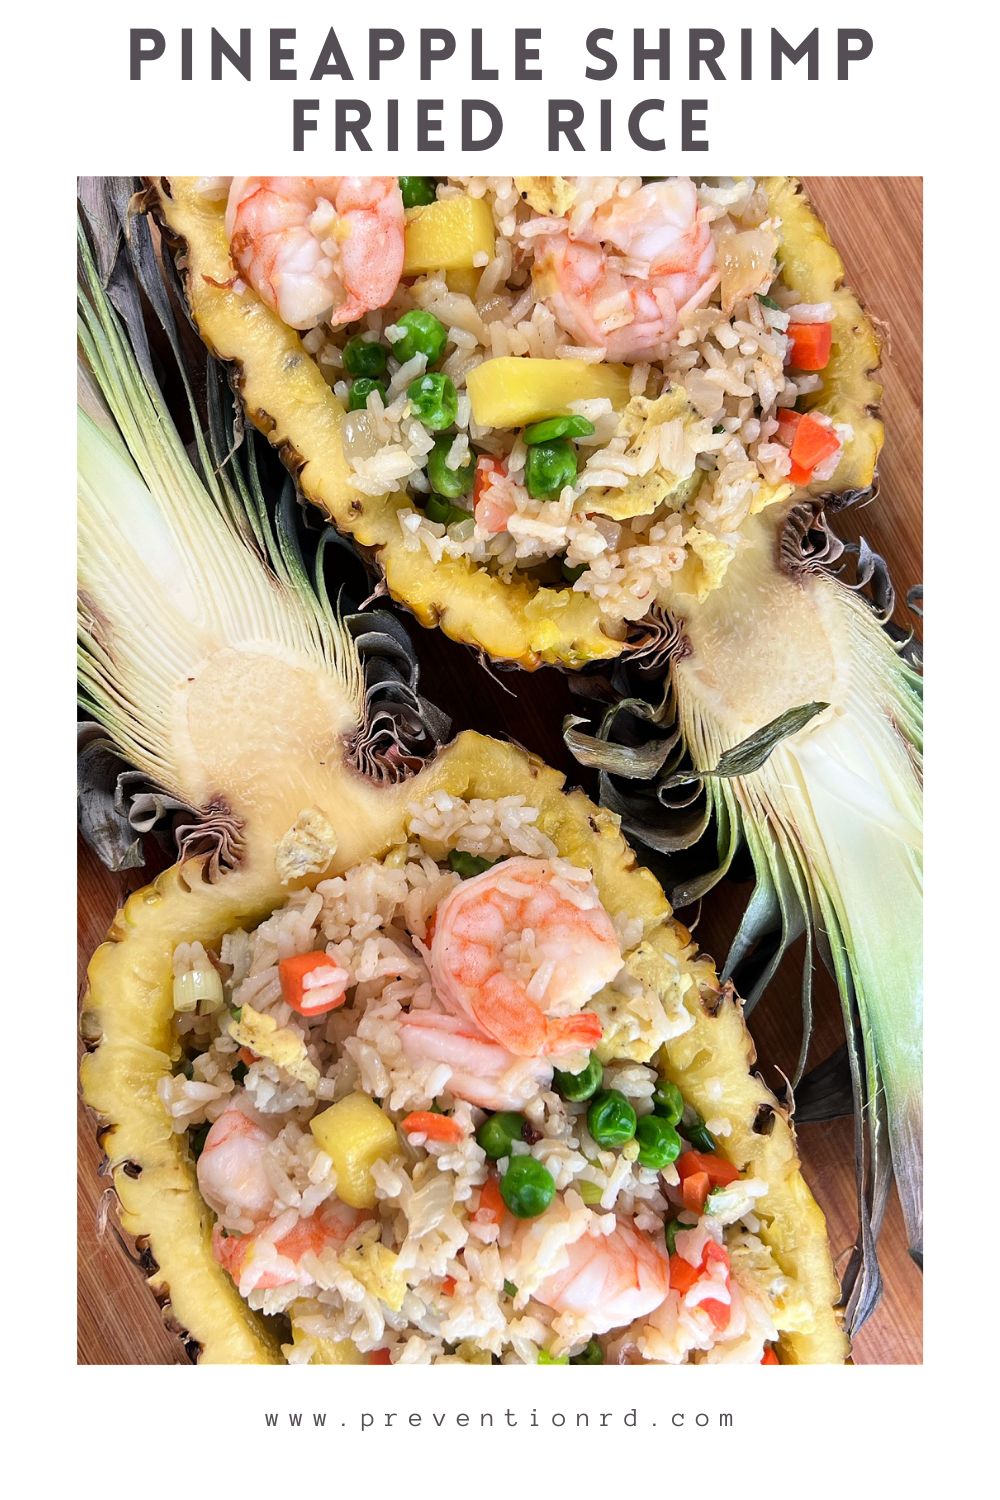 Pineapple Shrimp Fried Rice via @preventionrd